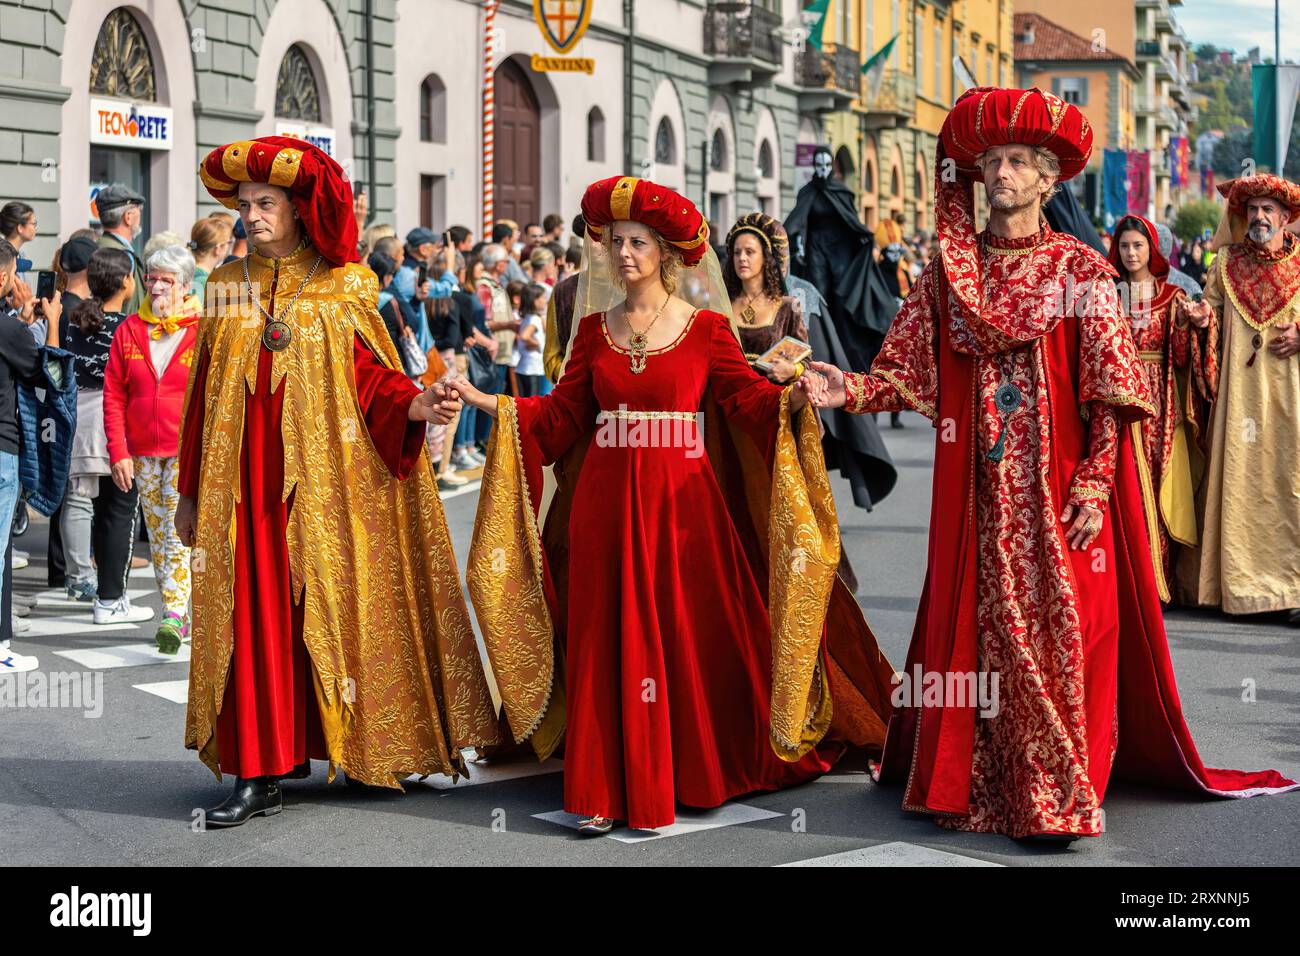 Processione storica alla Parata medievale - parte tradizionale delle celebrazioni durante l'annuale festival del Tartufo bianco ad Alba, Italia. Foto Stock